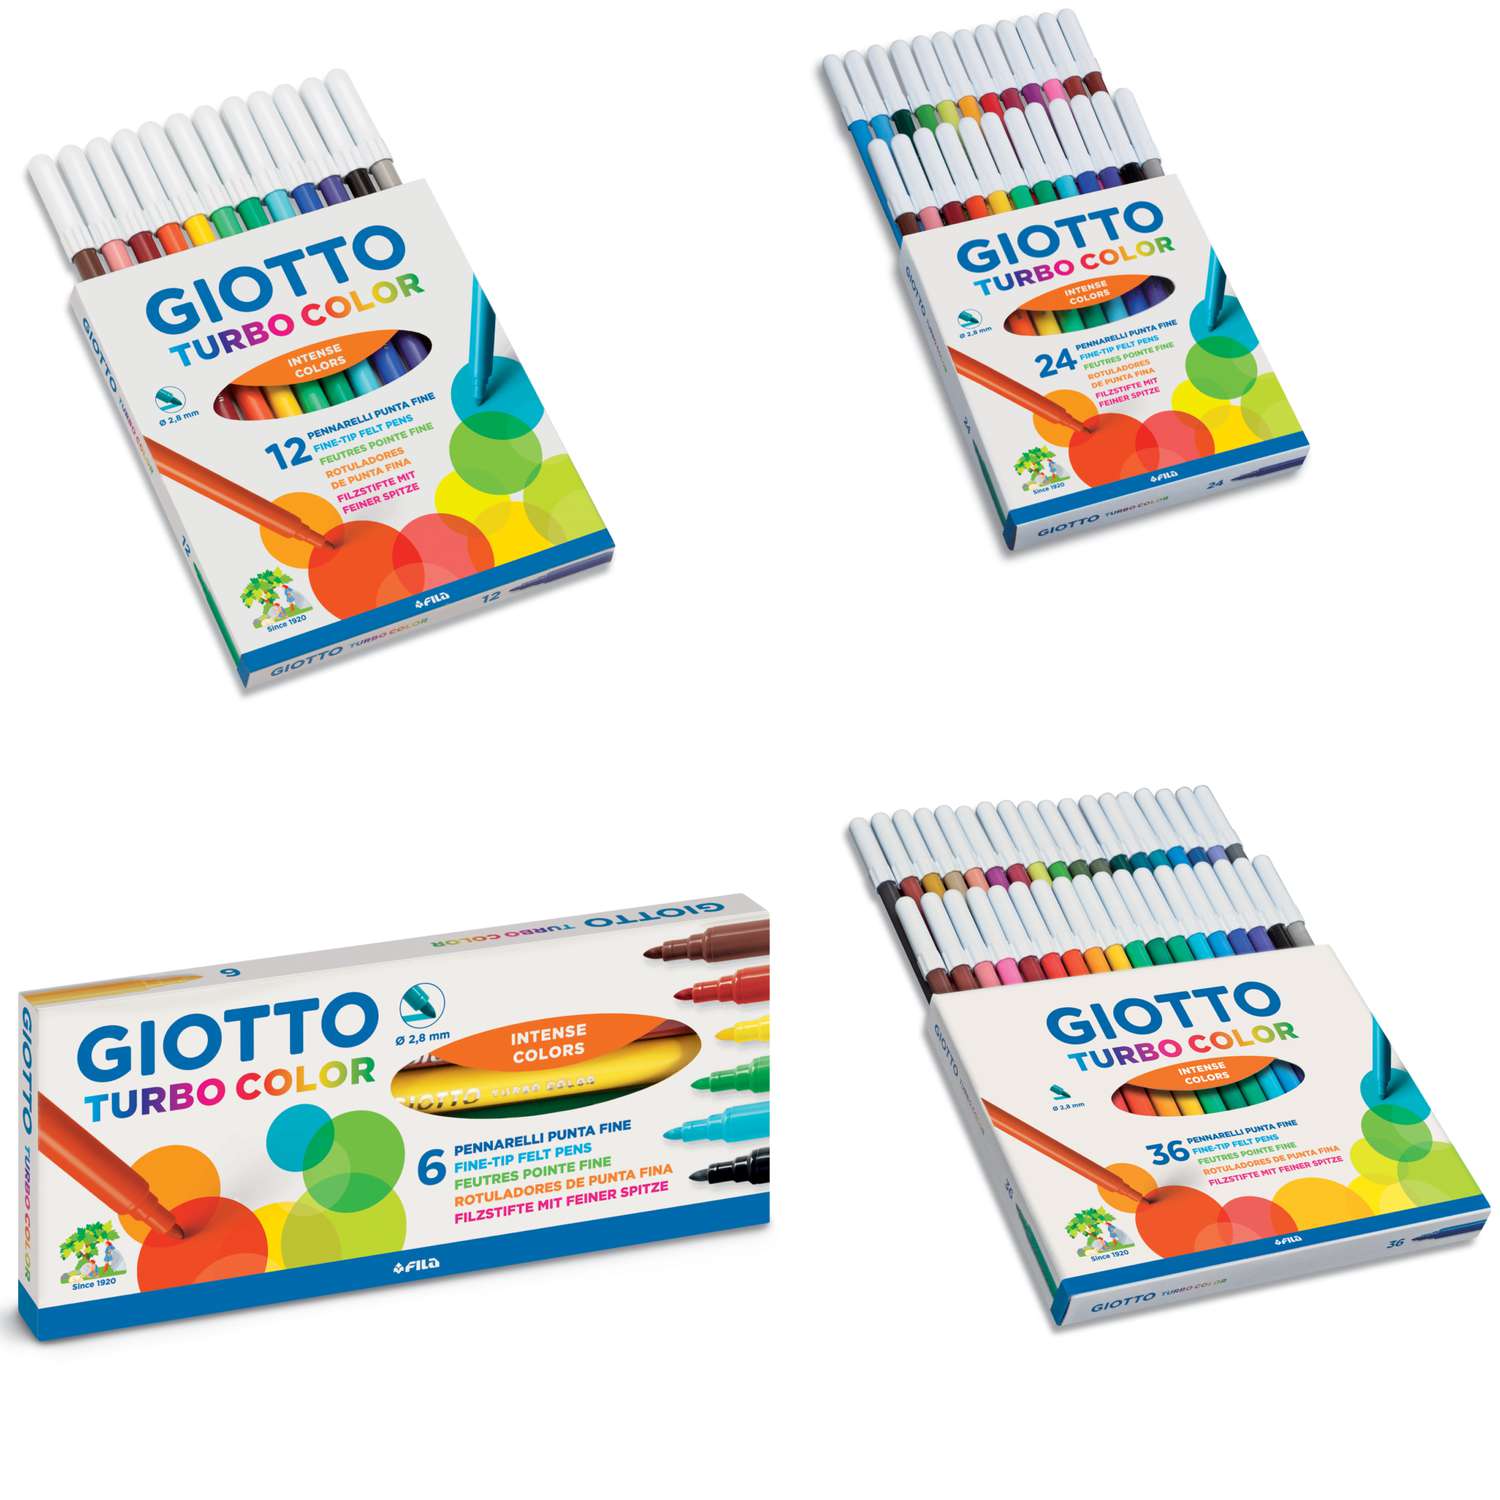 Pennarelli Giotto TurboColor confezione da 12 colori a spirito